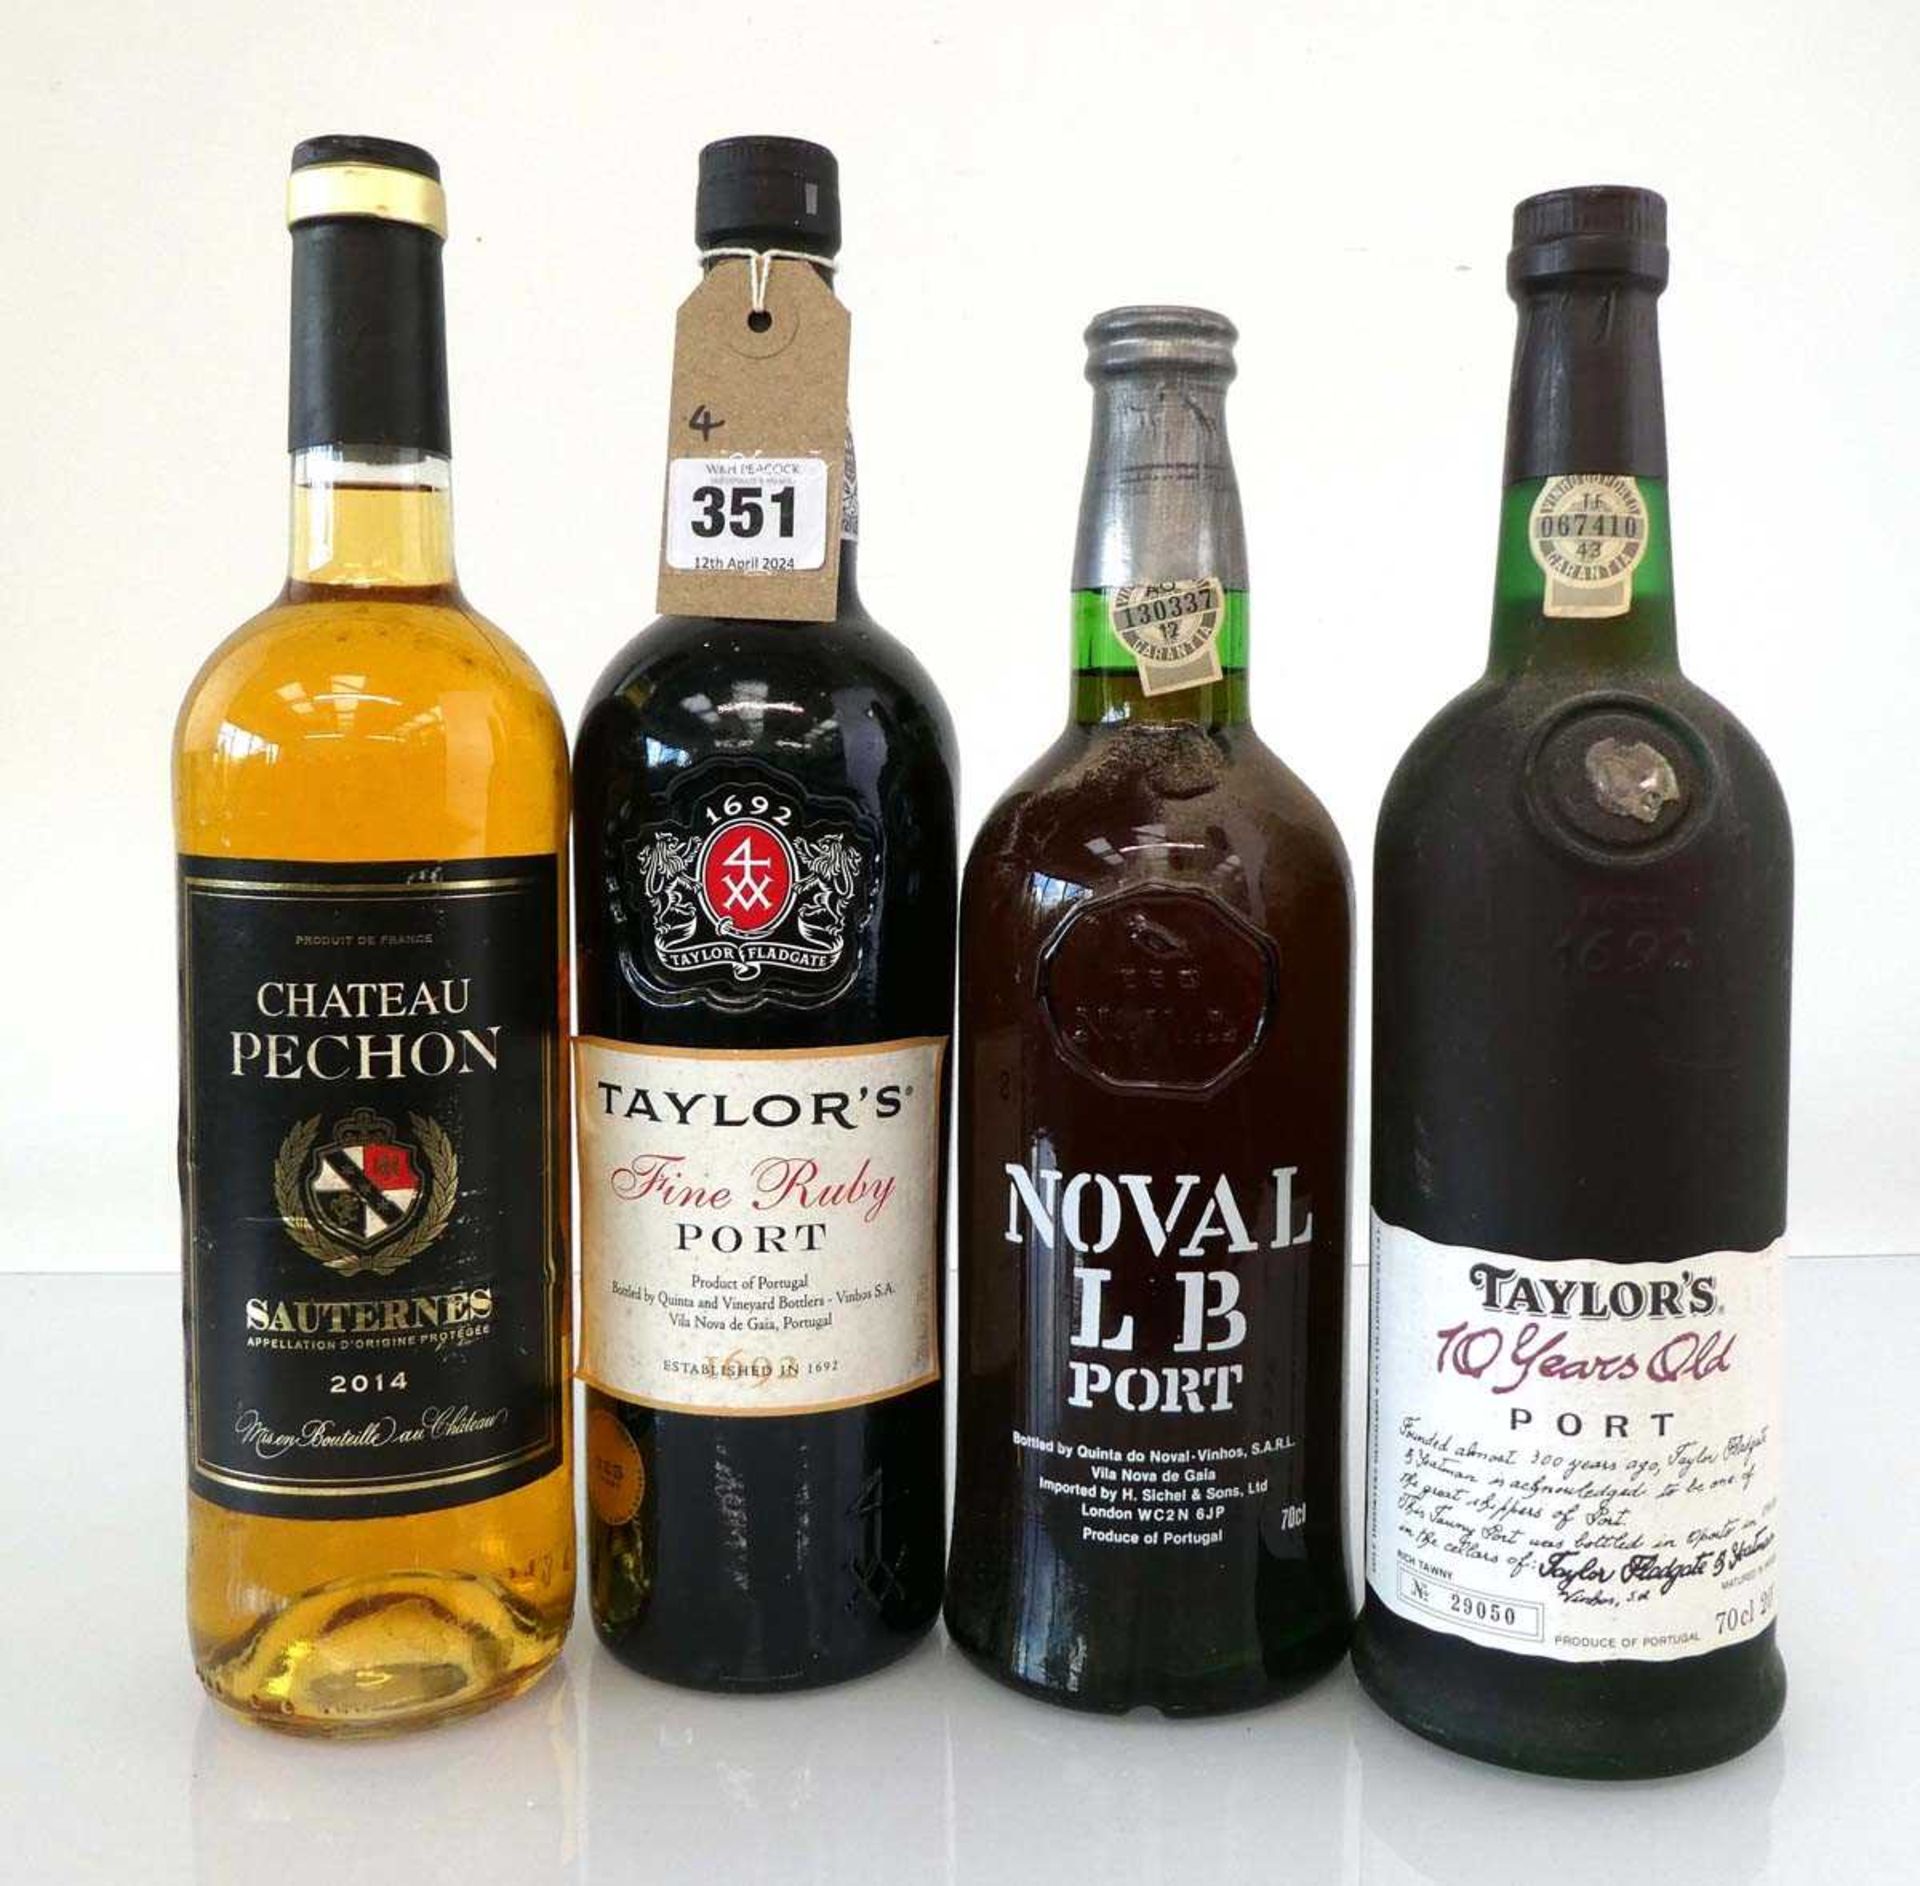 4 bottles, 1x 2014 Chateau Pechon Sauternes, 1x Quinta do Noval LB Finest Reserve Port, 1x Taylor